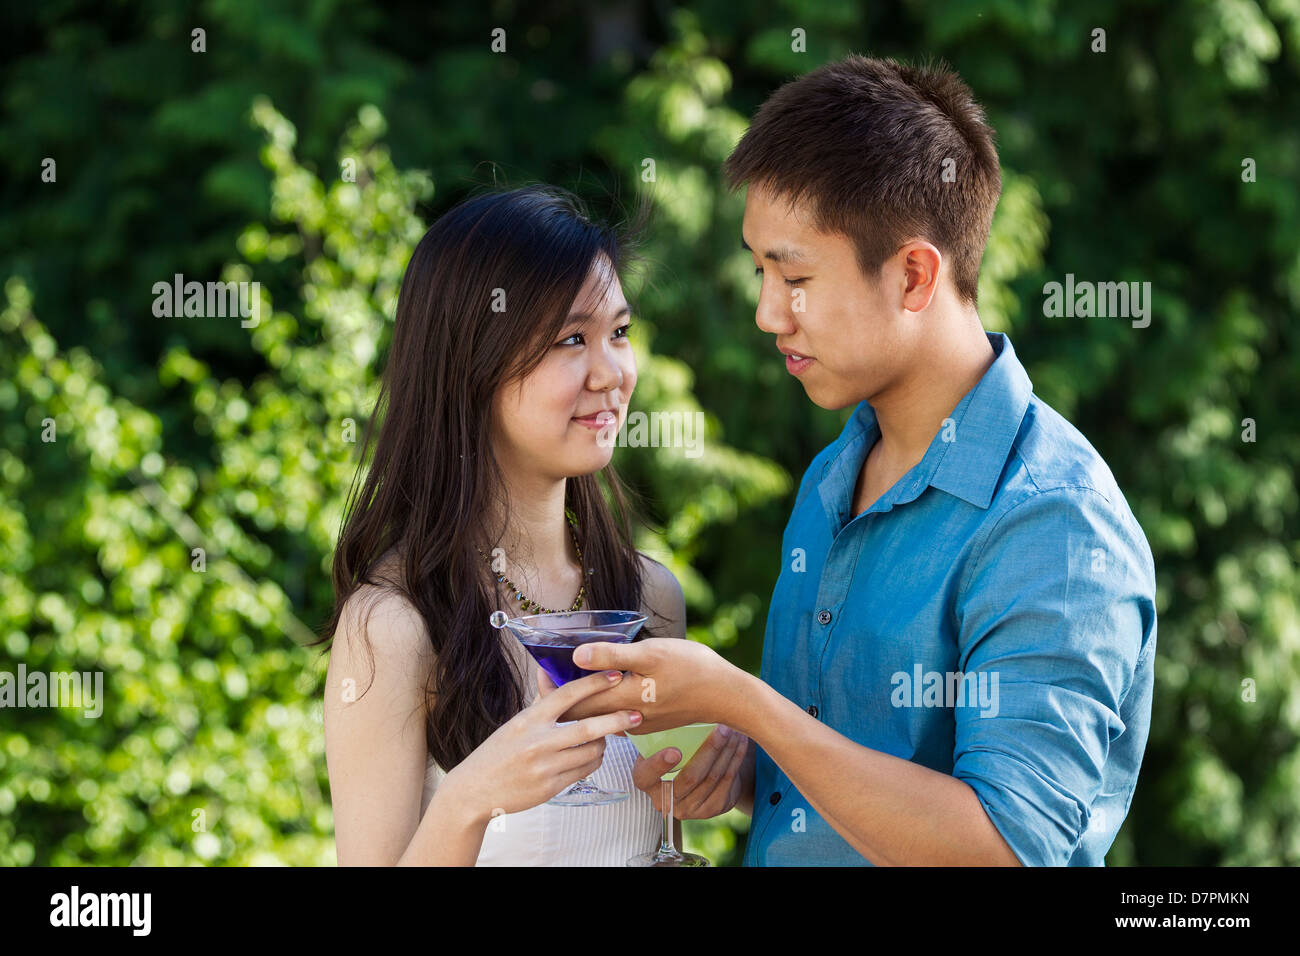 Horizontale Foto eines jungen Erwachsenen Mannes reichte seine Freundin einen Drink im Freien mit grünen Bäumen im Hintergrund Stockfoto